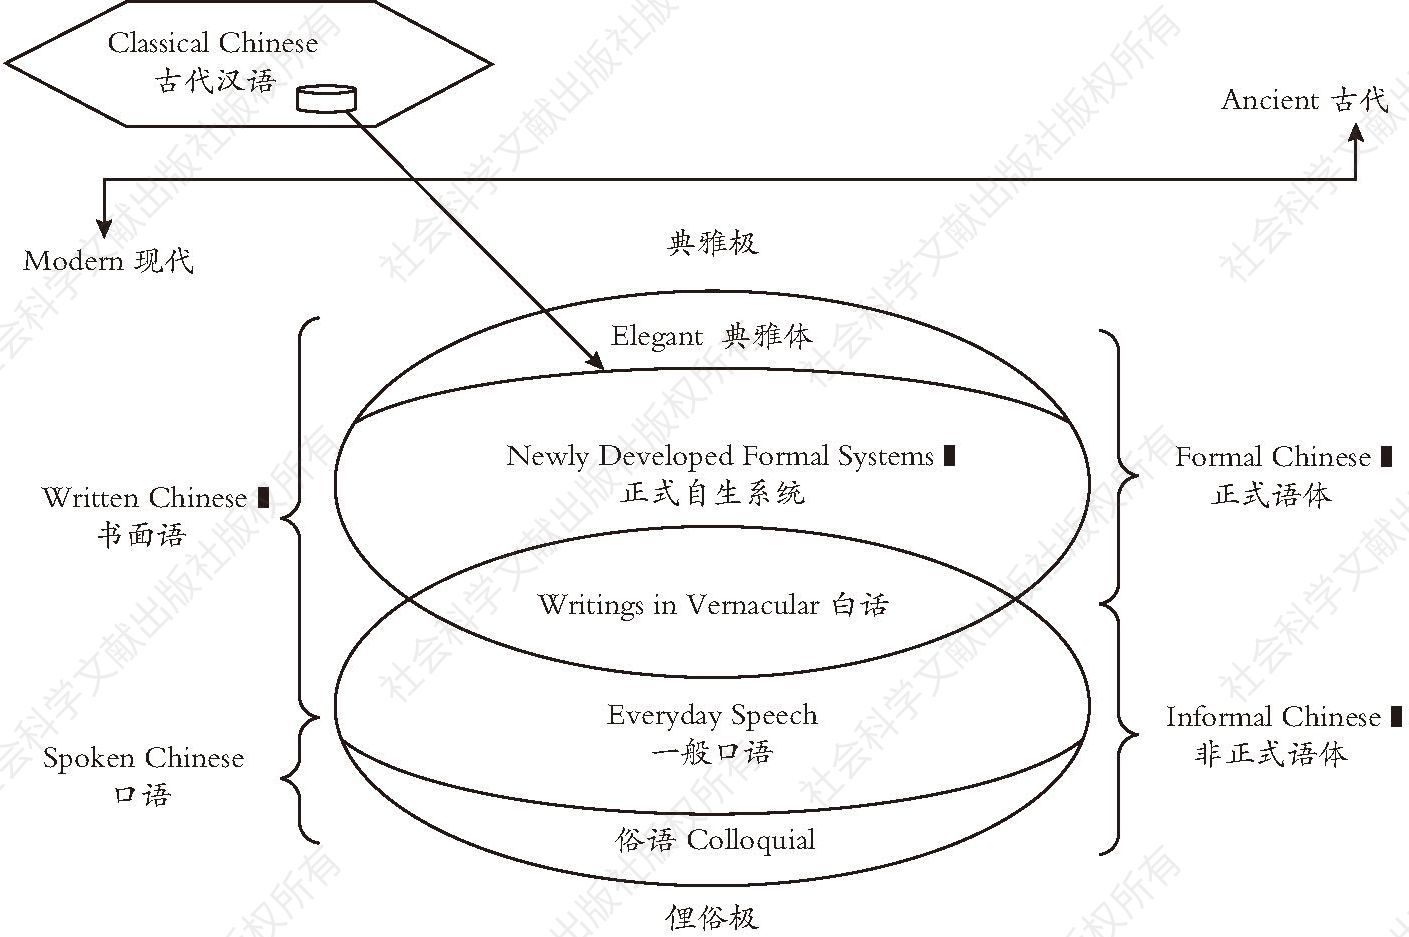 图6-1 汉语口语及书面语体示意图